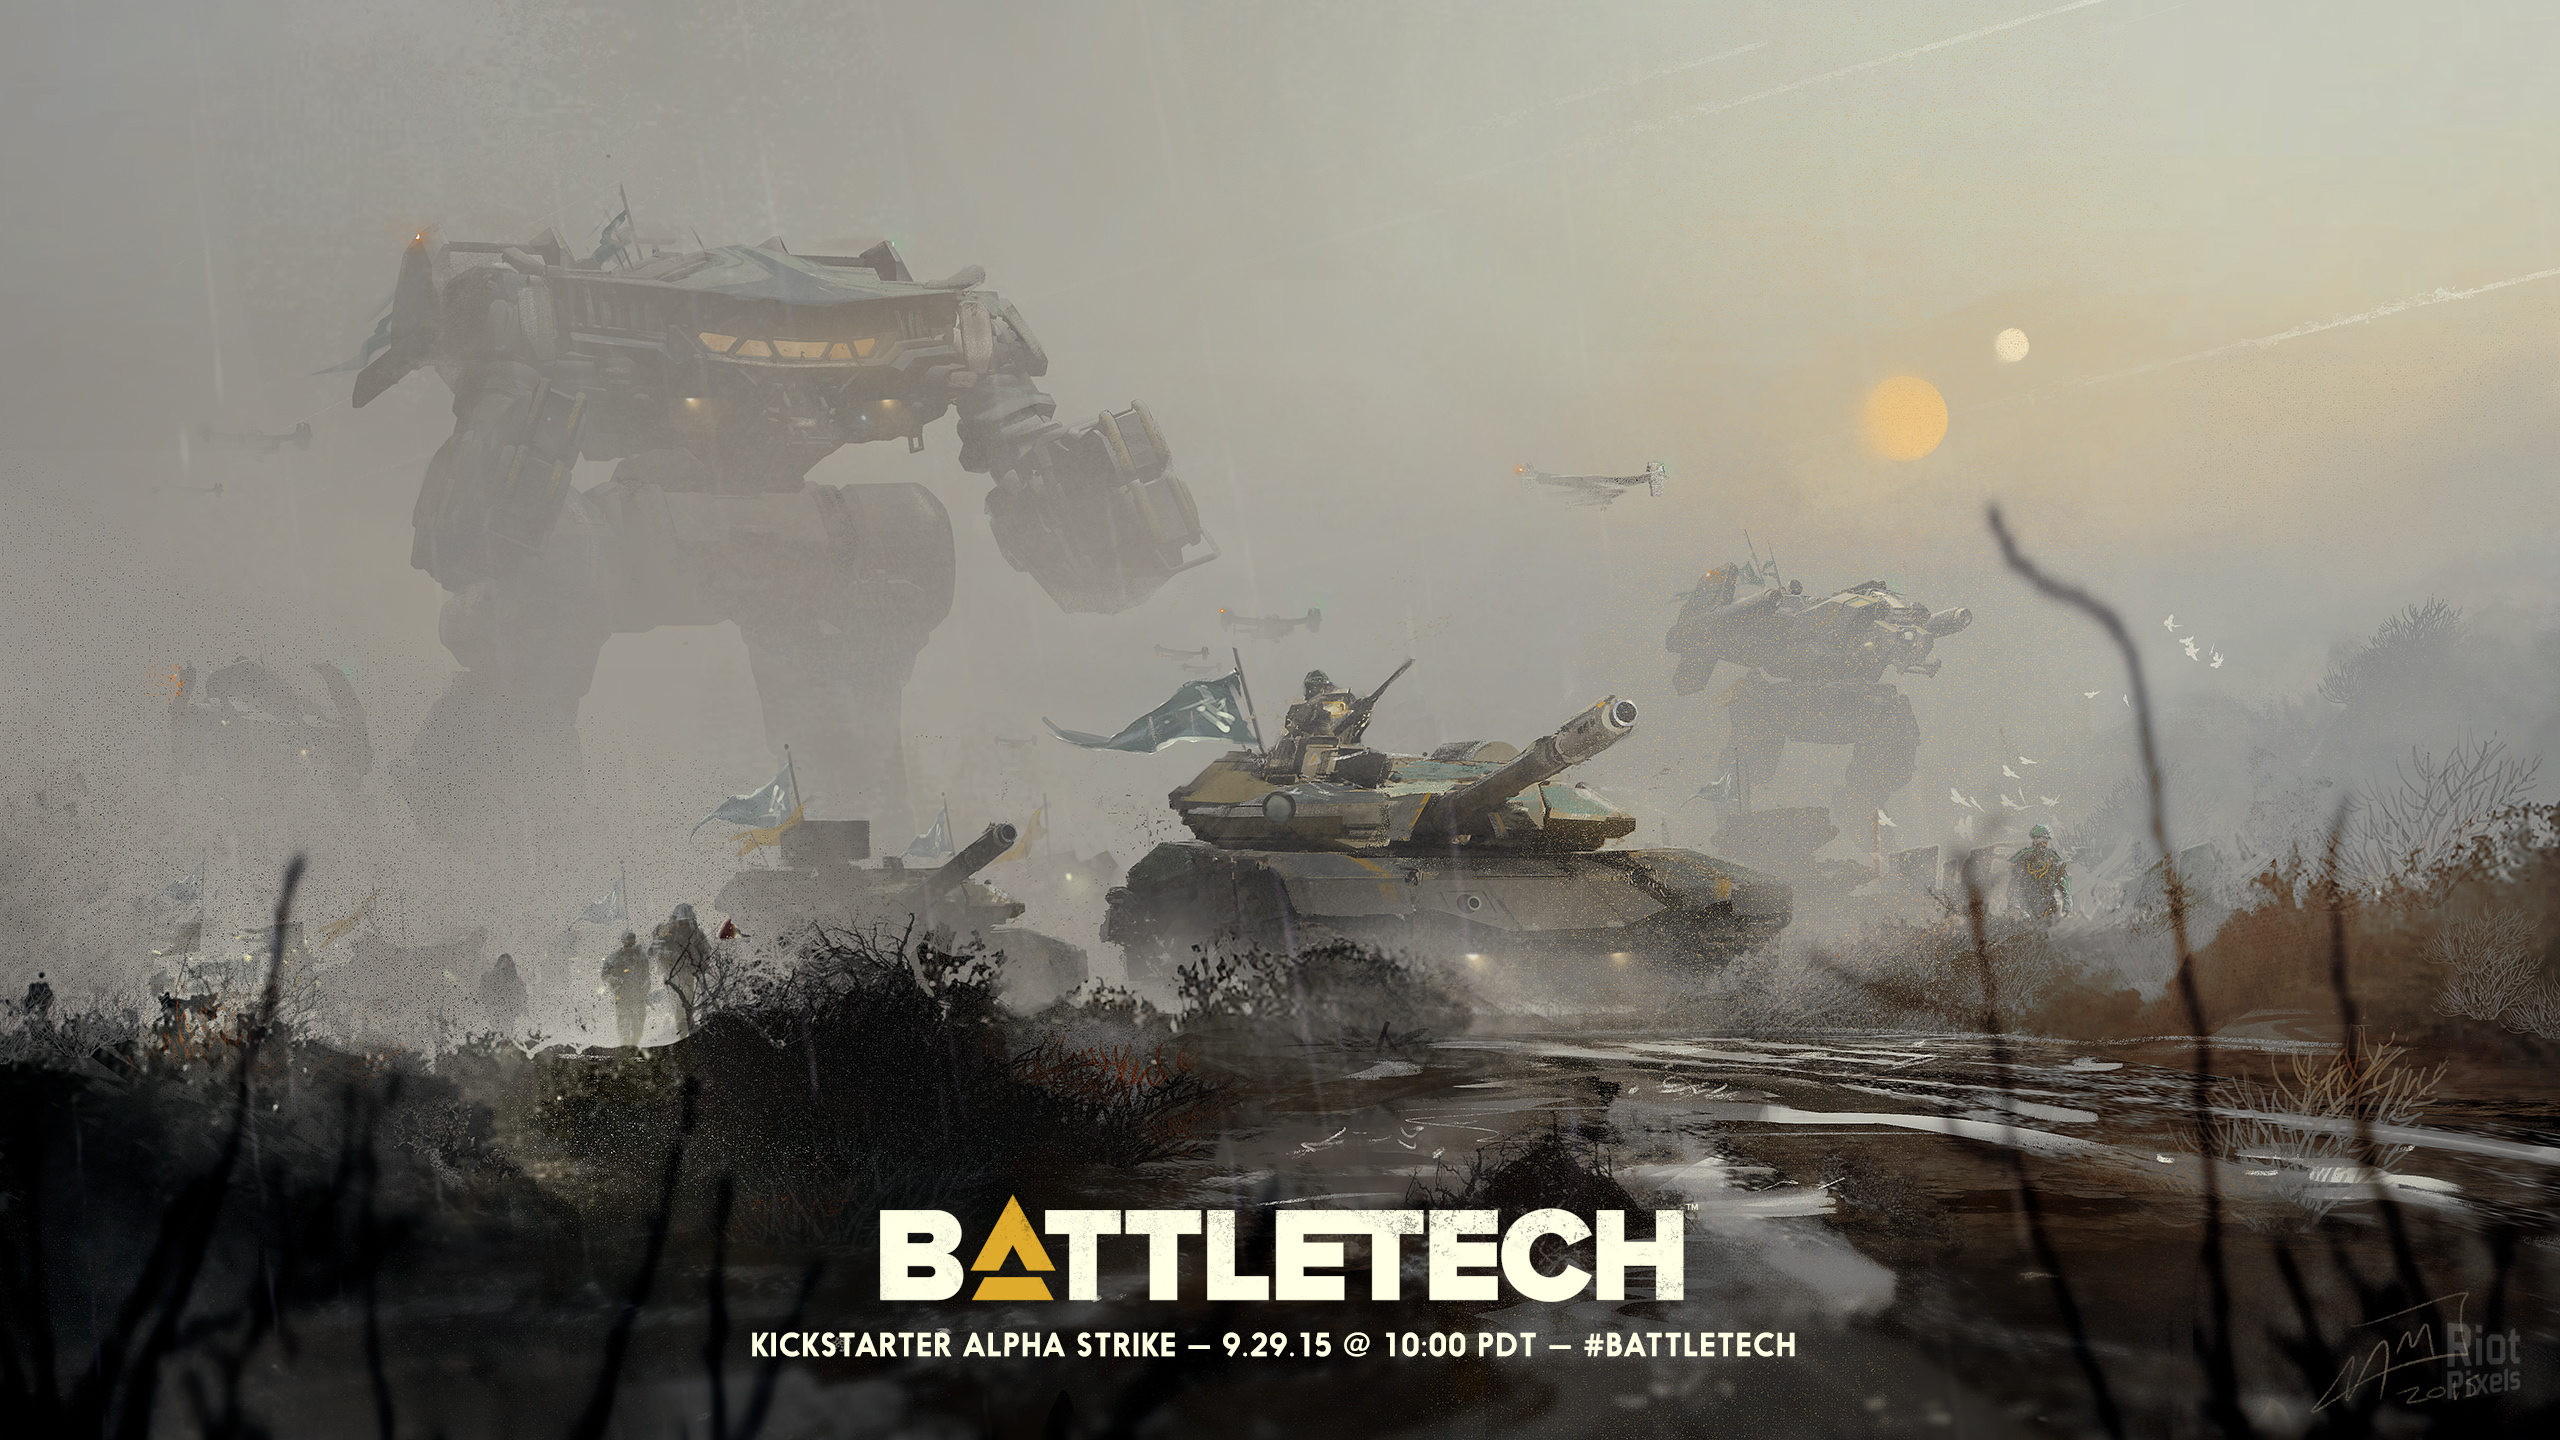 Battletech Tank 2560x1440